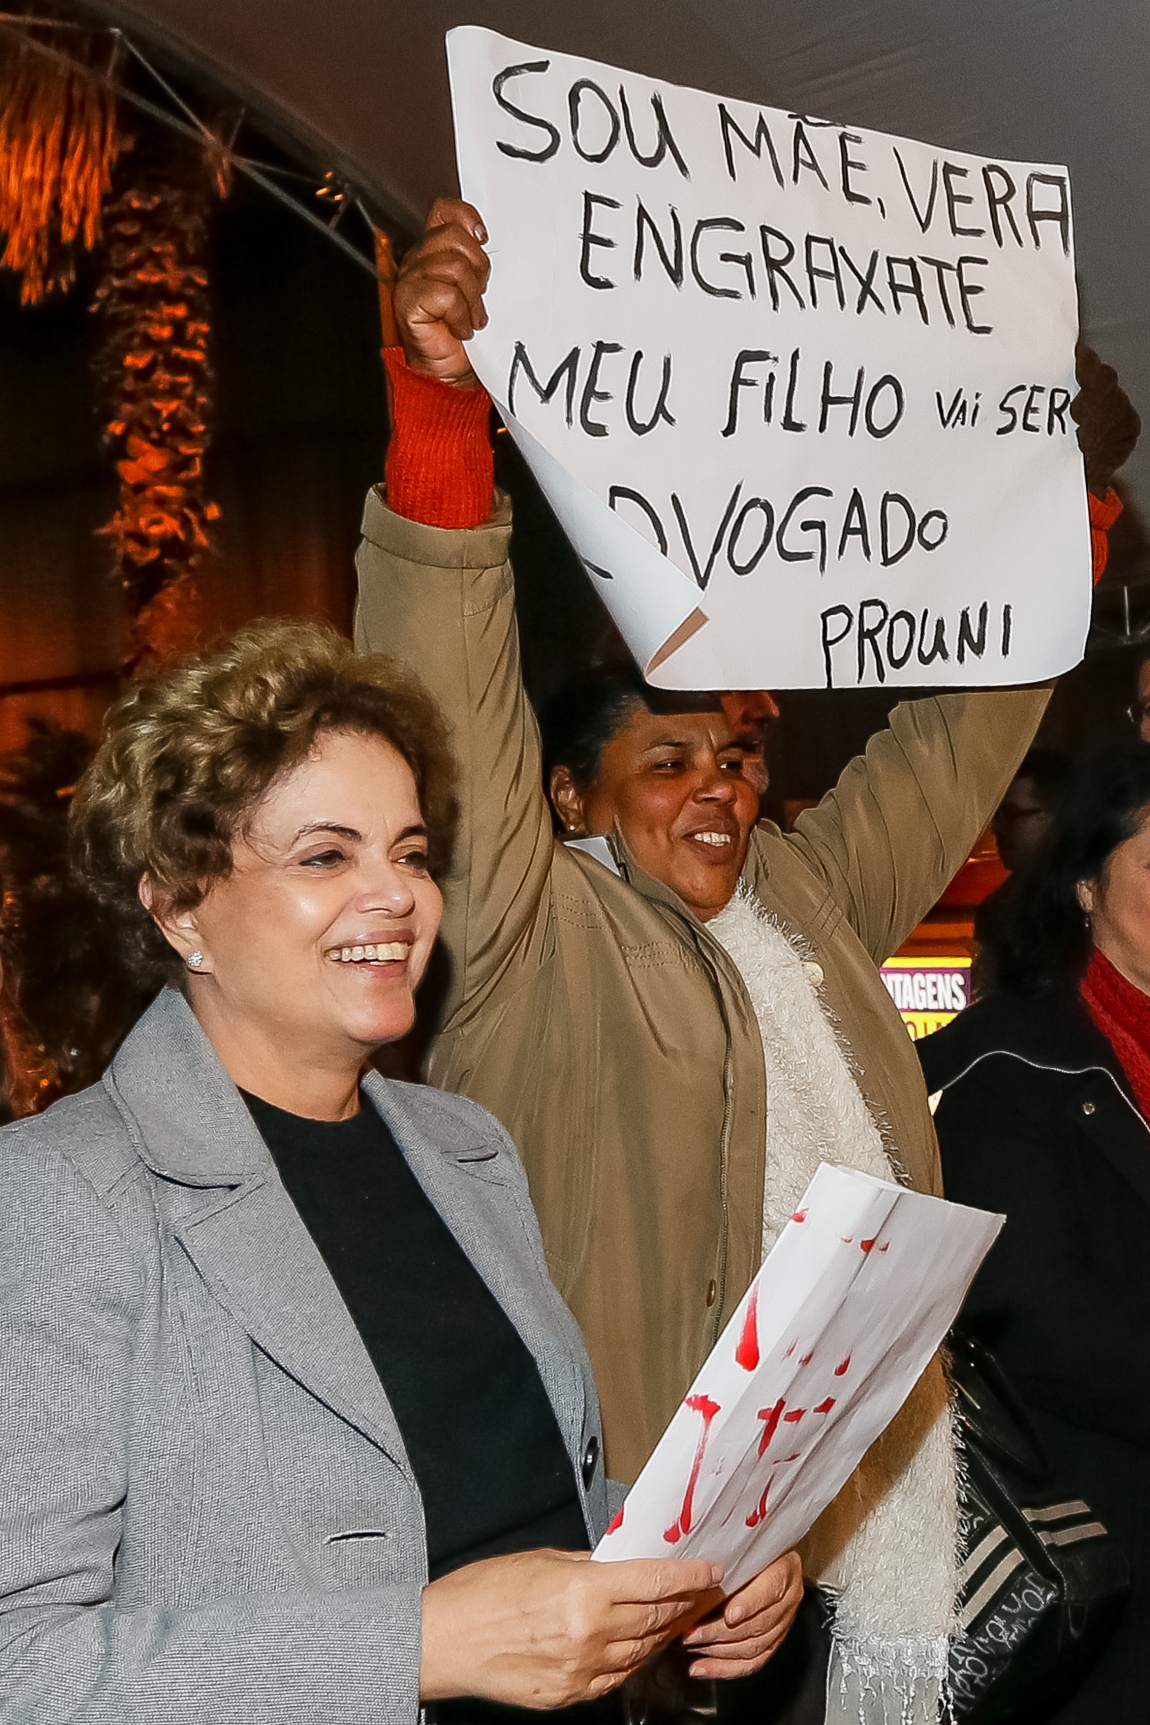 Imagem de Blog do Miro: Limitar voos e cortar comida de Dilma mostram fascismo e fraqueza do “interino”, com medo das ruas